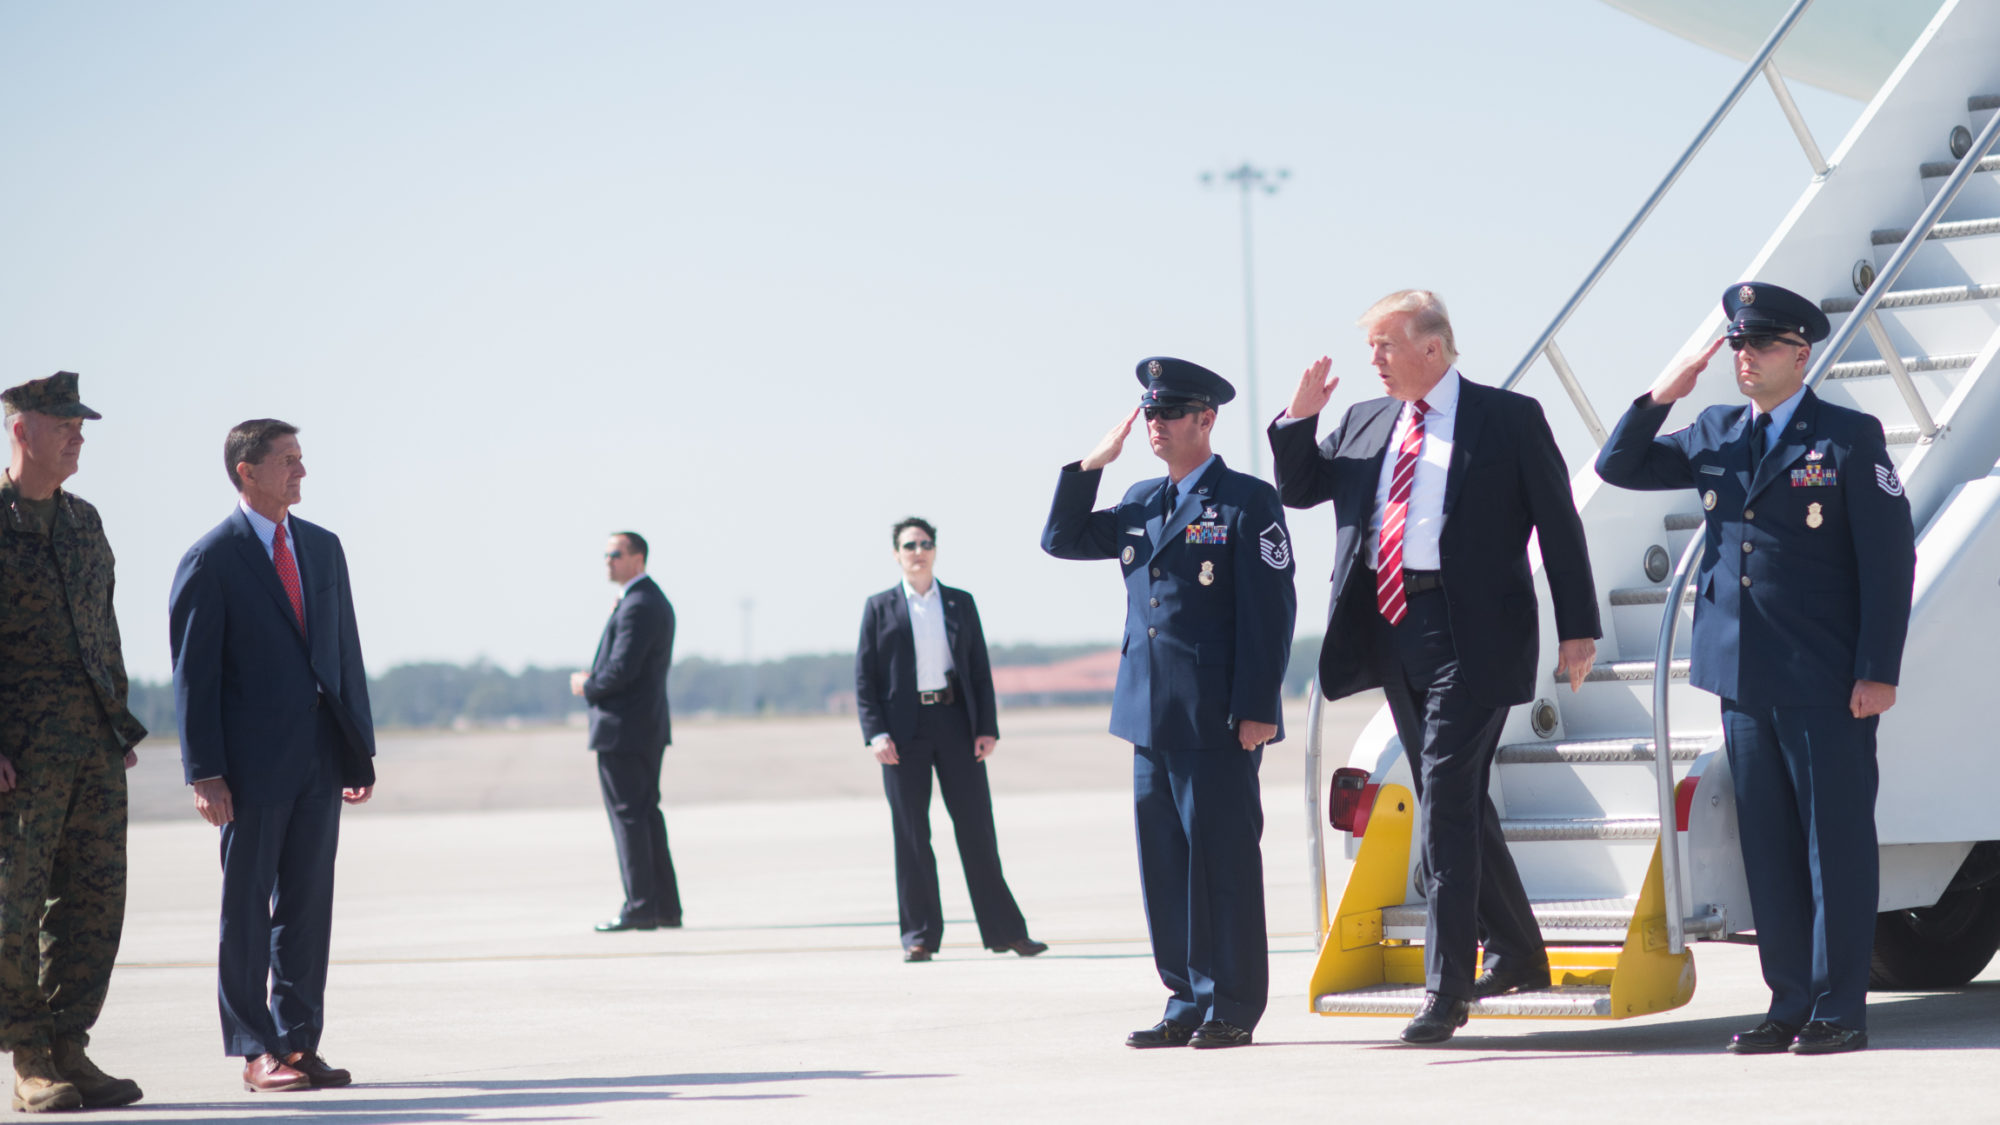 US President visiting MacDill Air Force Base